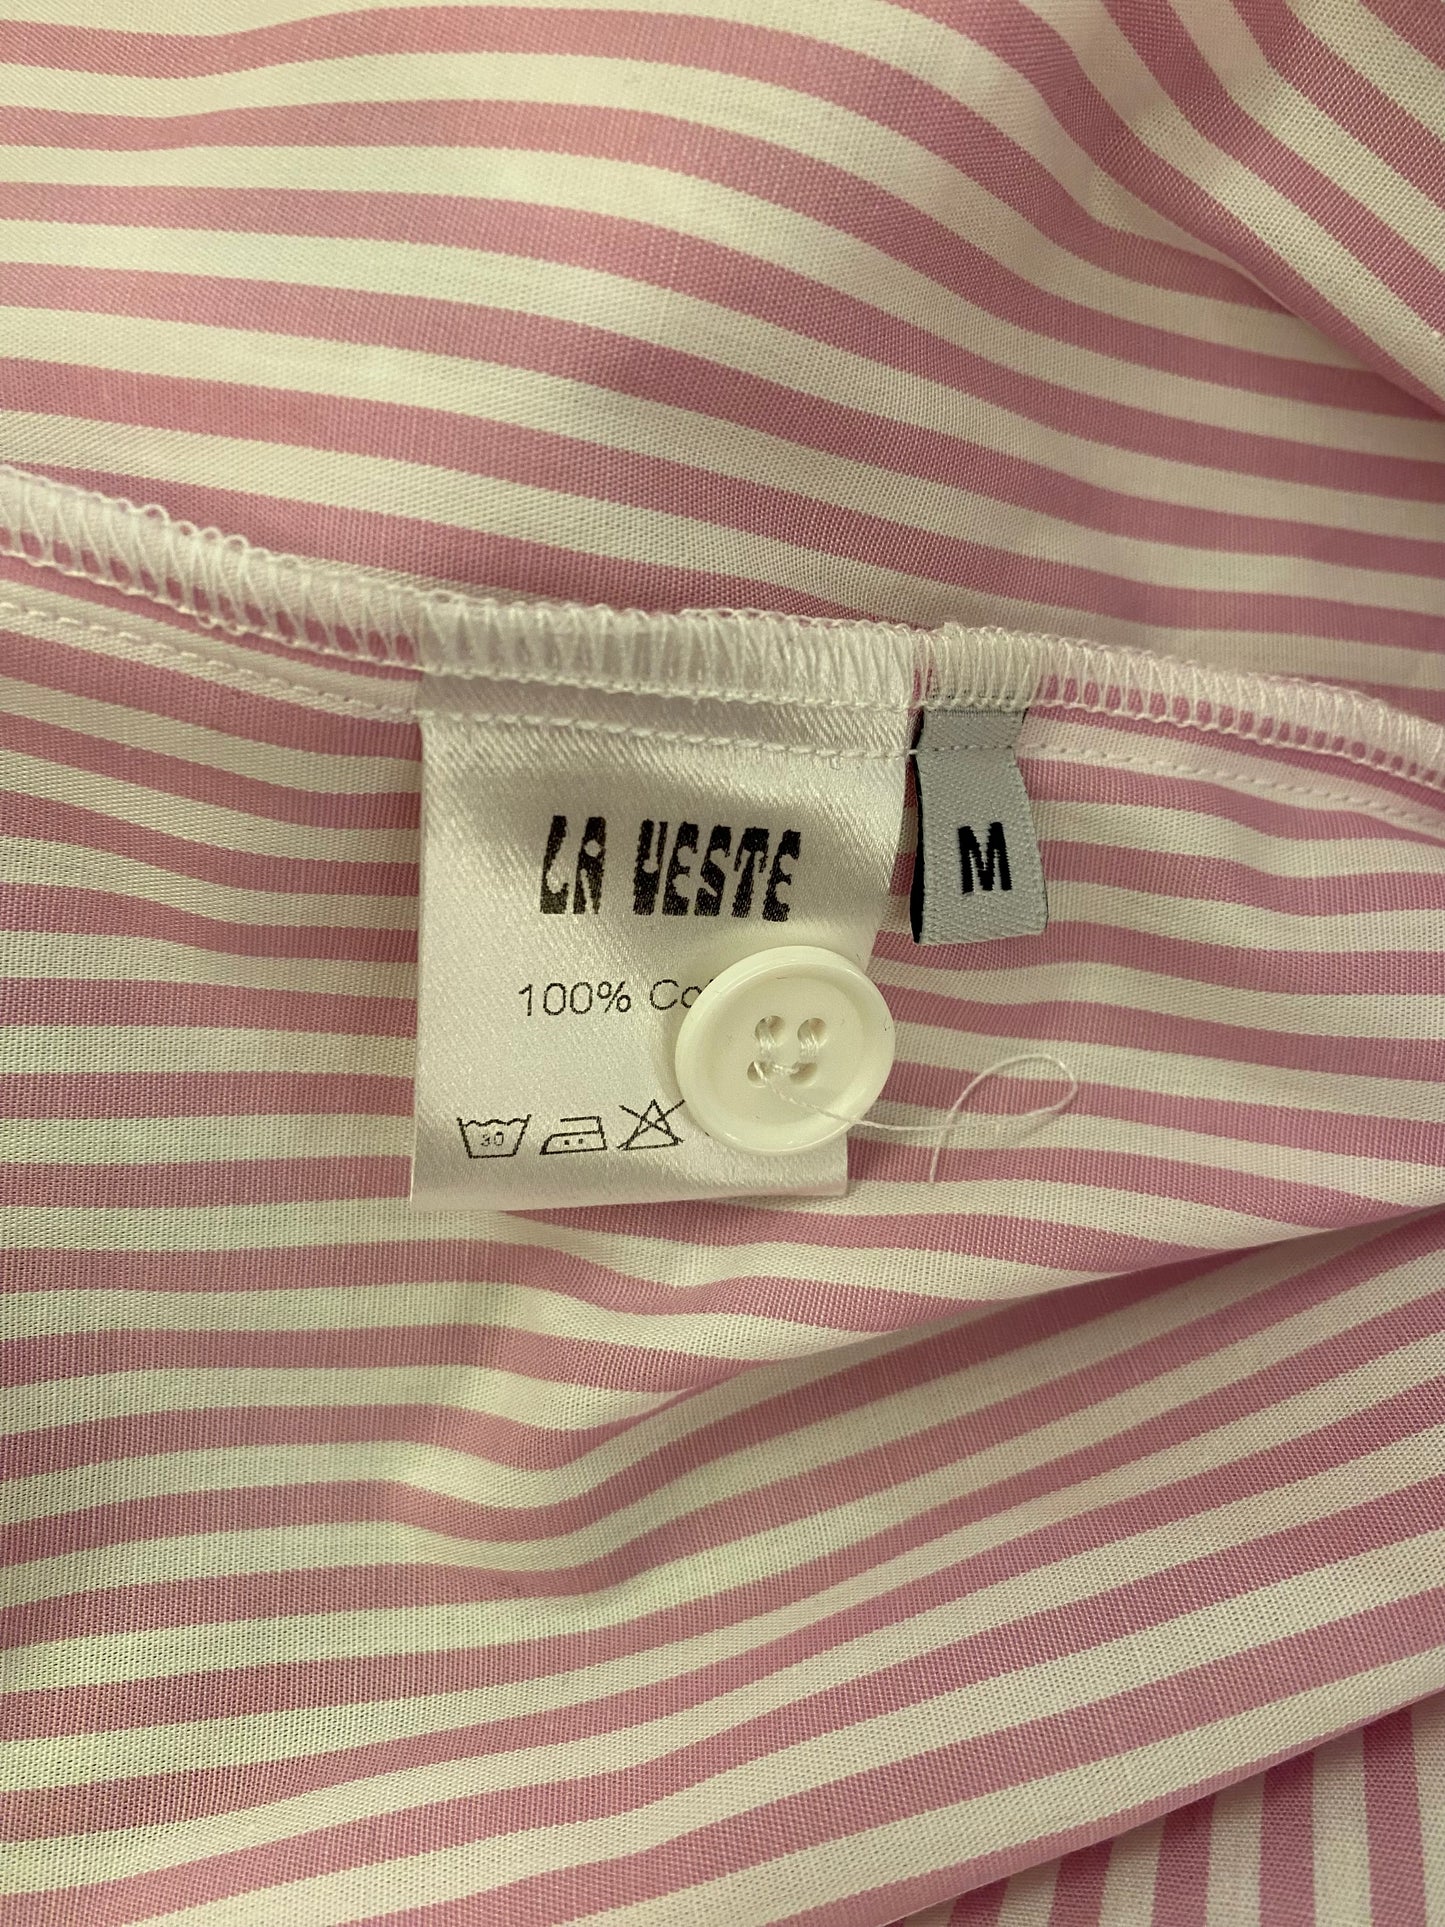 LA VESTE Cotton Pink Shirt Size M